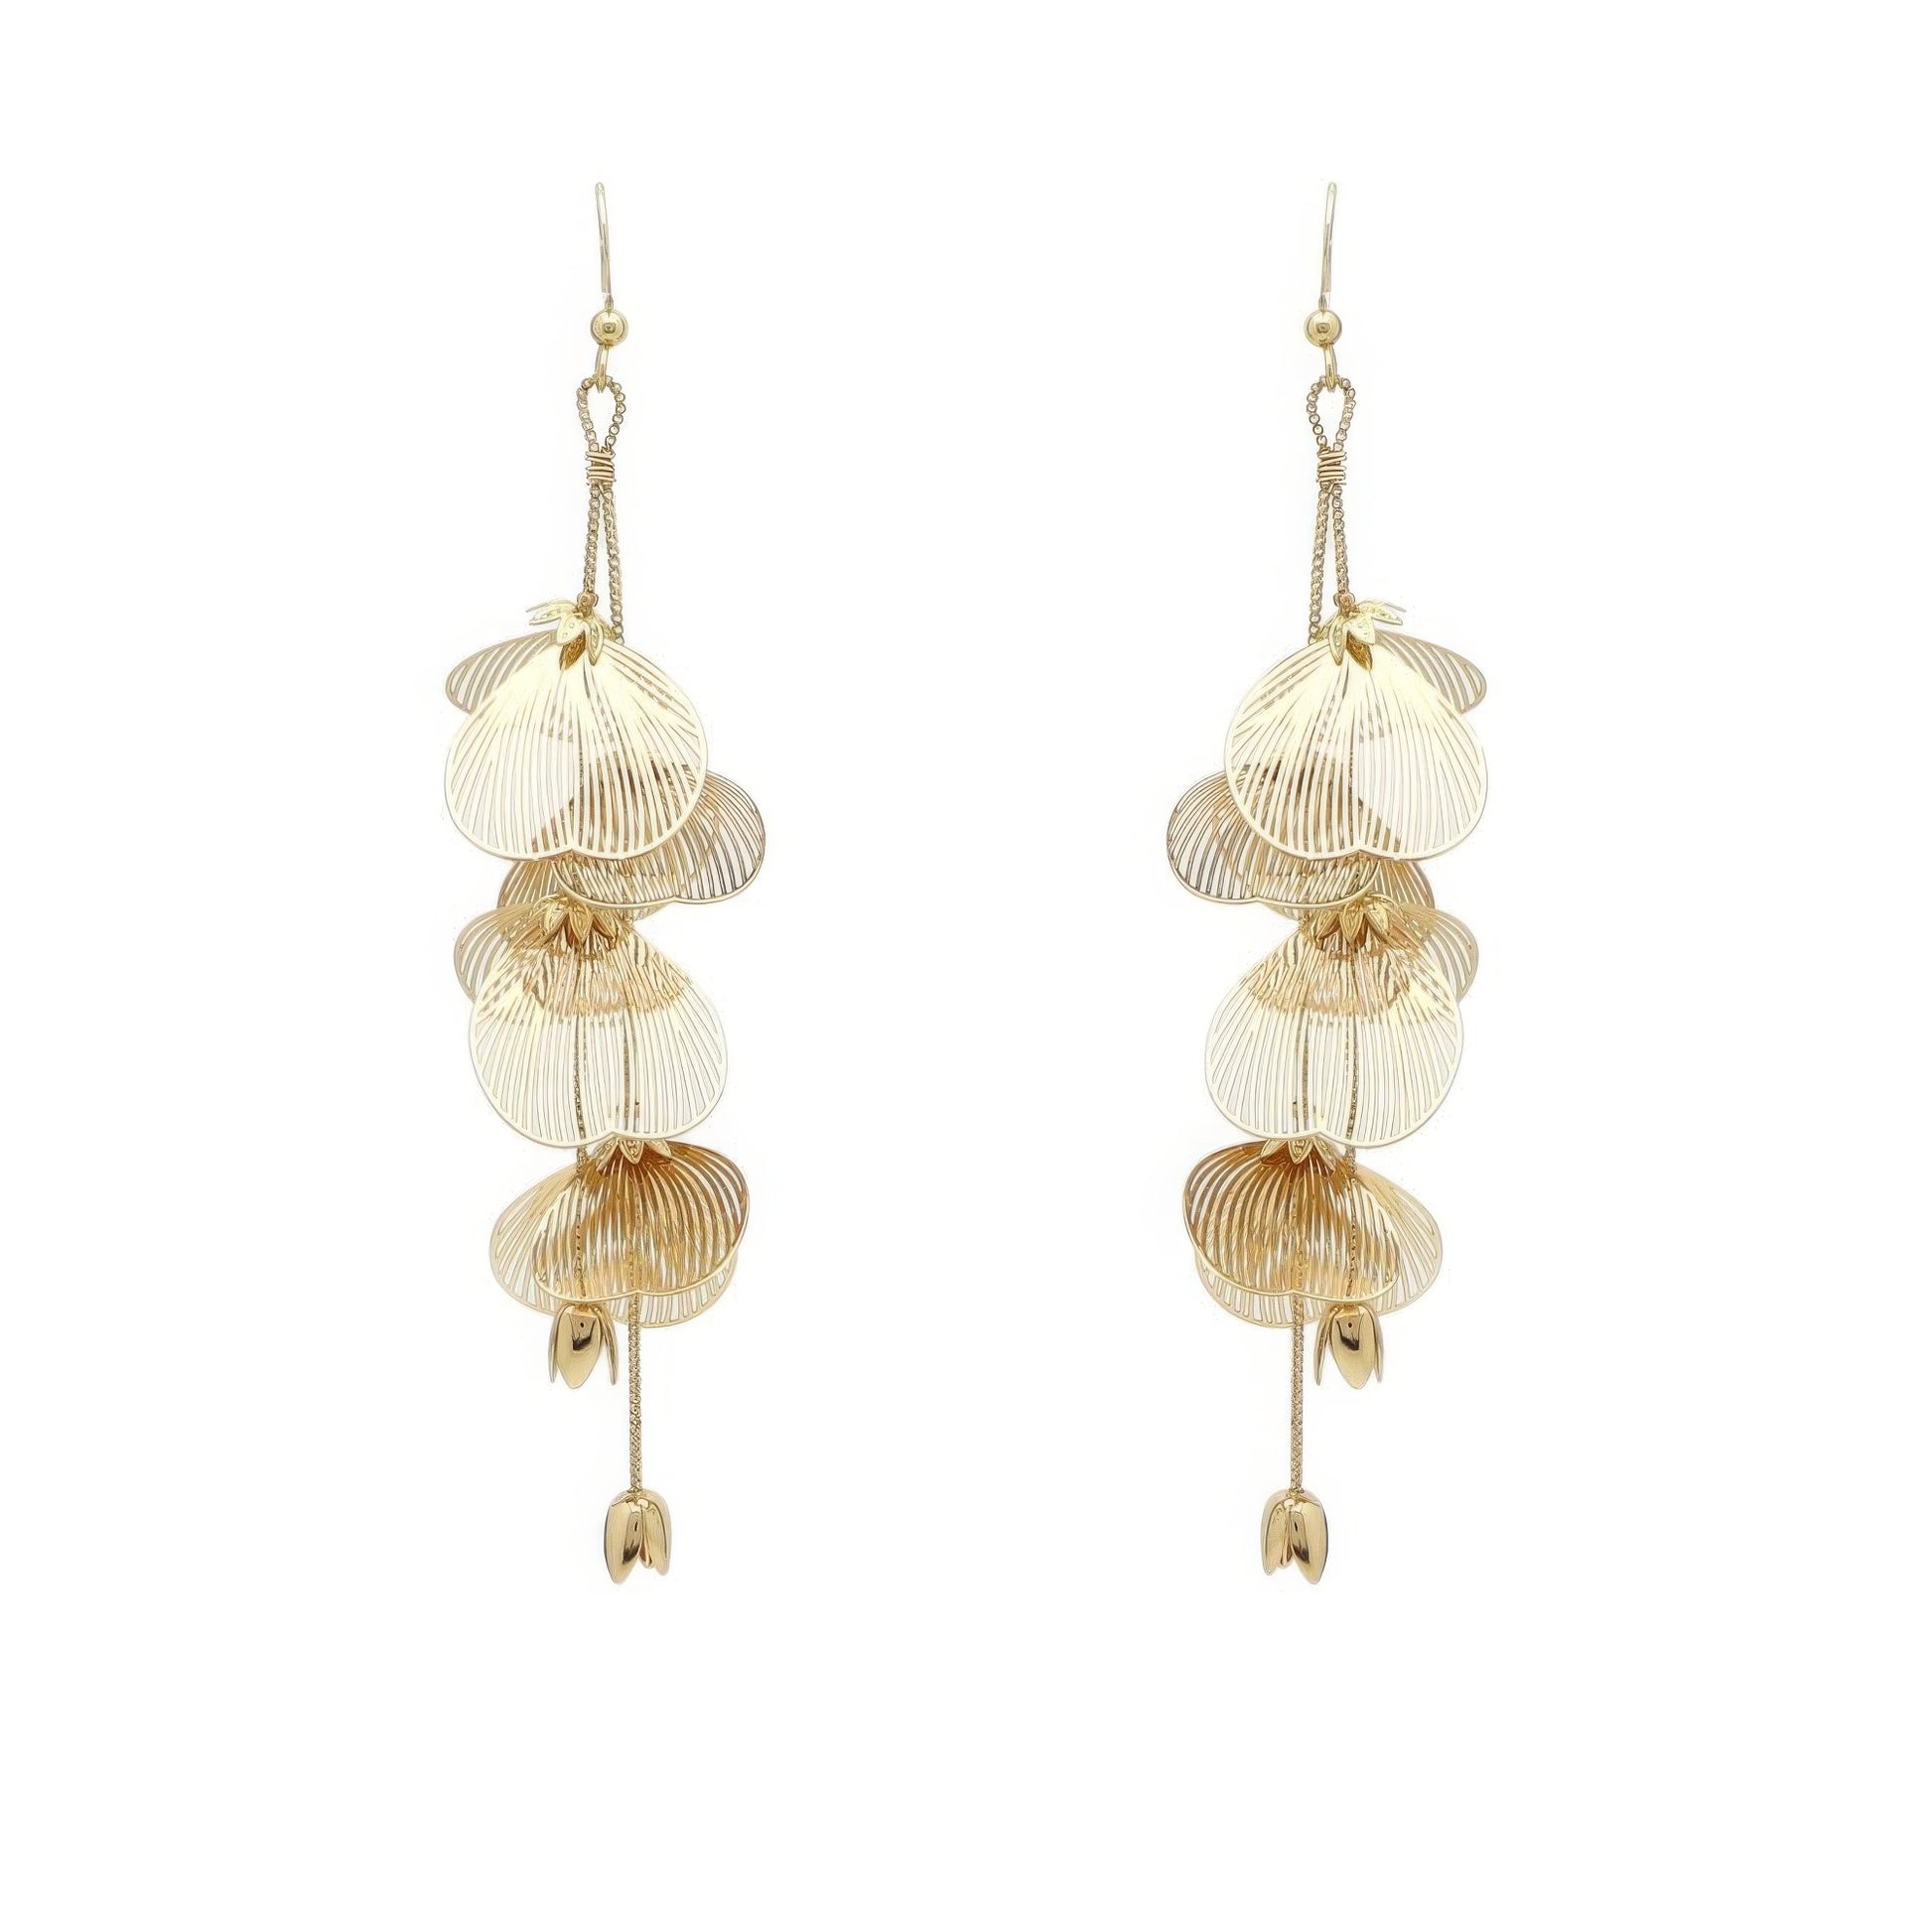 Metal Flower Drop Earrings - Elegant 4-Inch Gold Floral Design